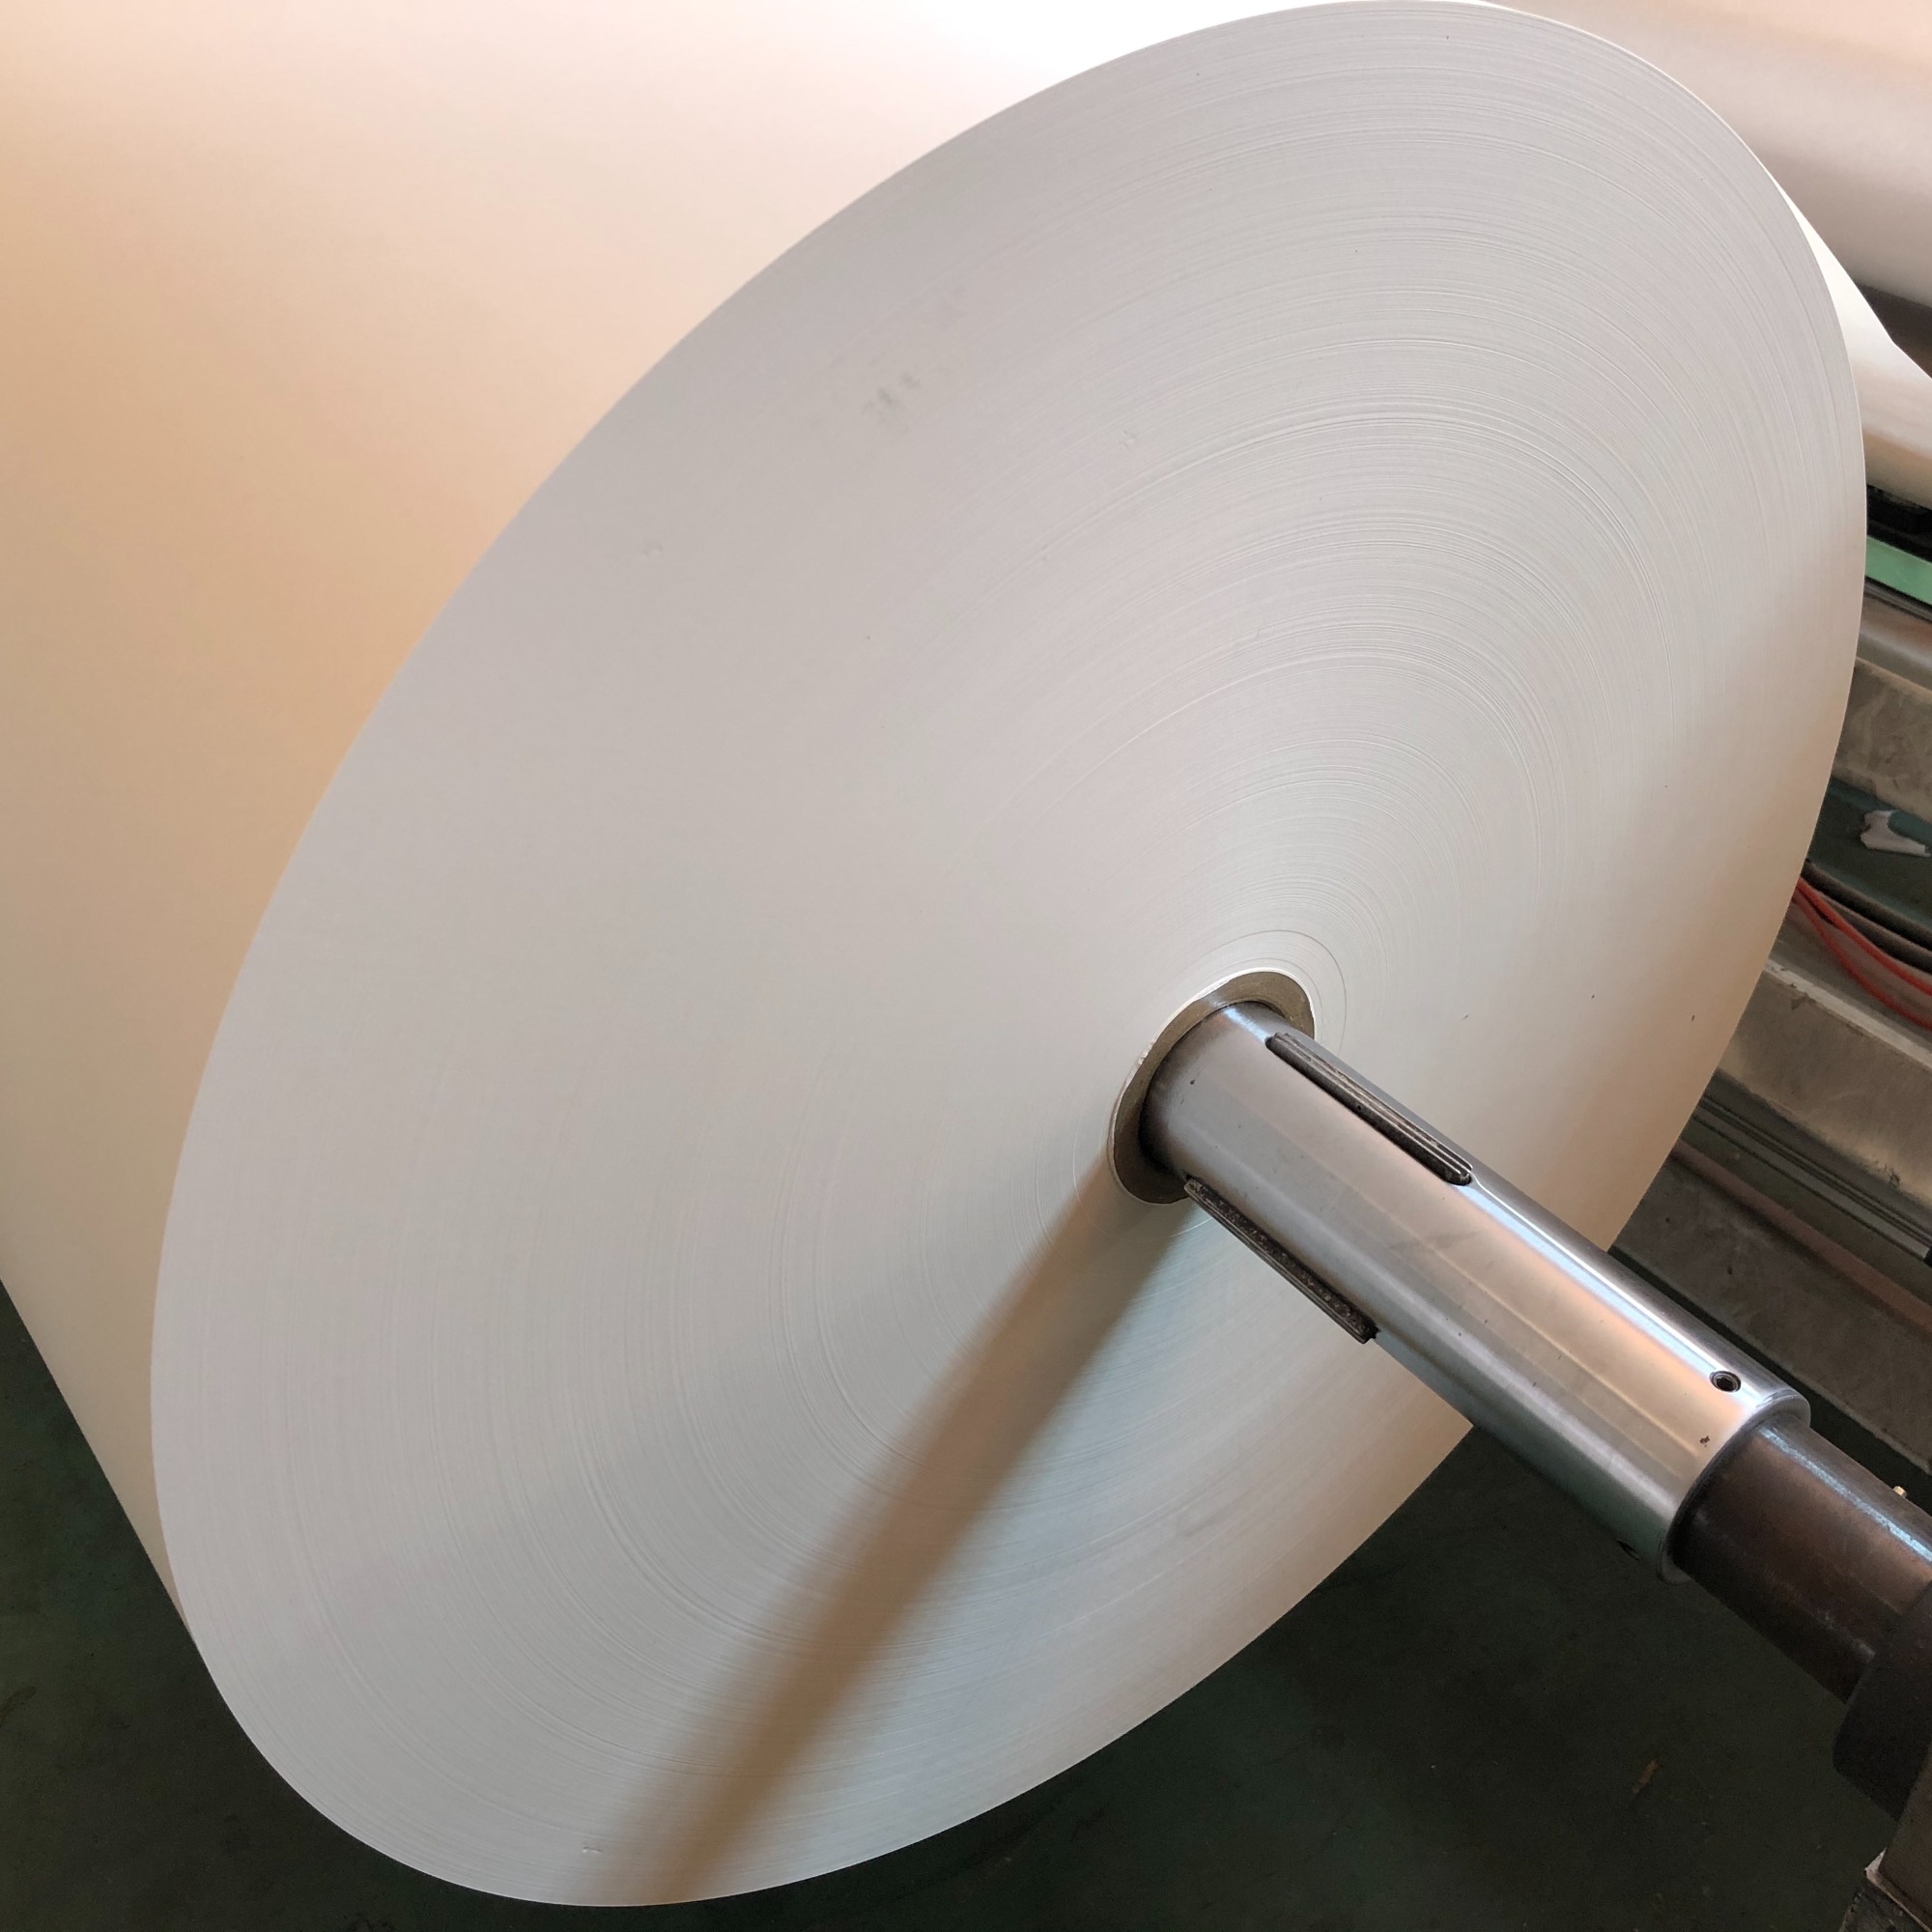 23 g/m² Rollo Jumbo de papel de sublimación ecológico y sin recubrimiento